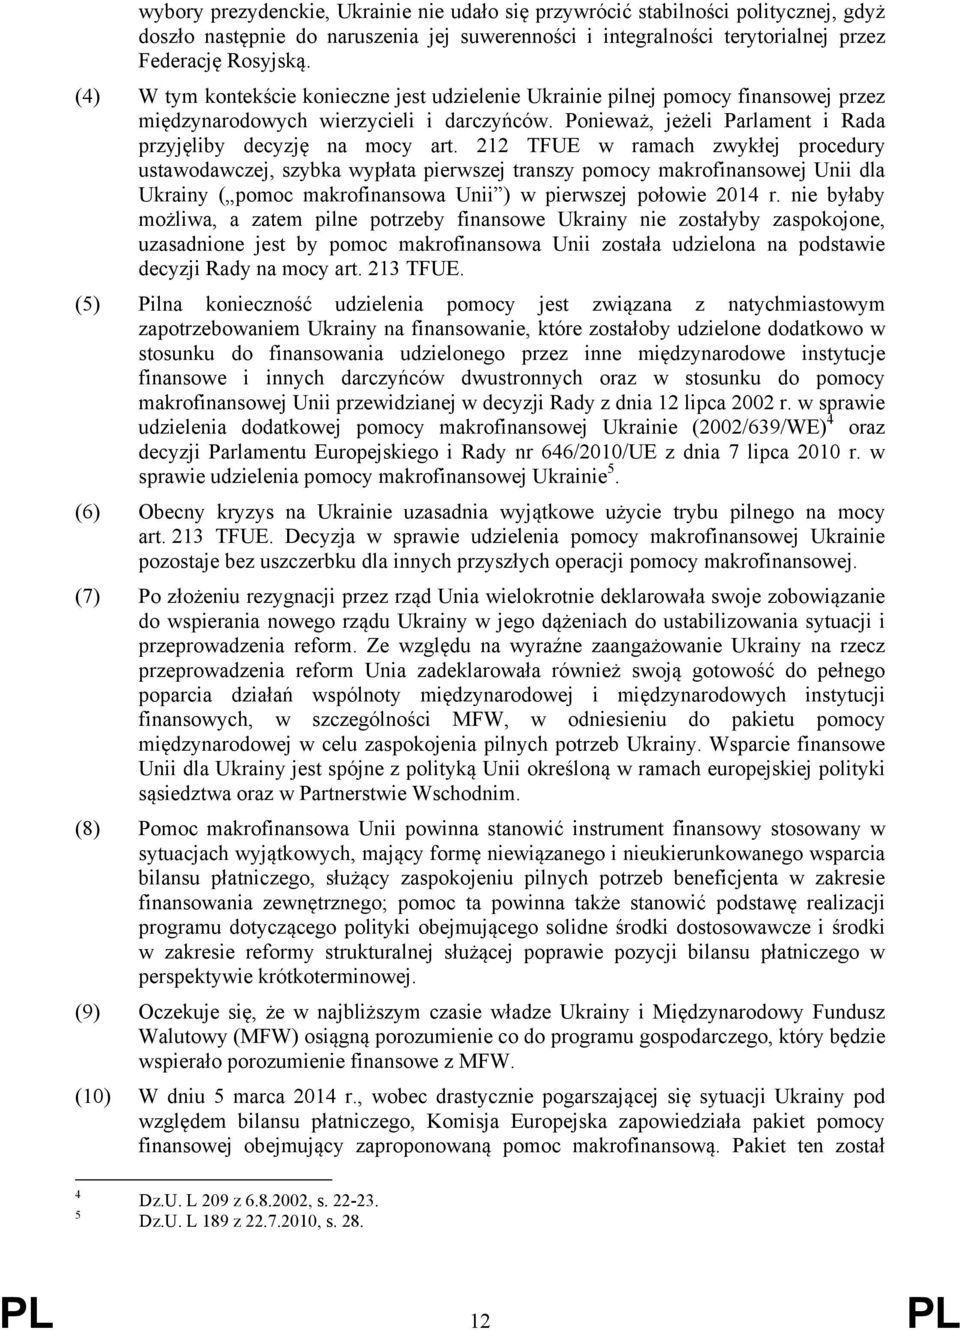 212 TFUE w ramach zwykłej procedury ustawodawczej, szybka wypłata pierwszej transzy pomocy makrofinansowej Unii dla Ukrainy ( pomoc makrofinansowa Unii ) w pierwszej połowie 2014 r.